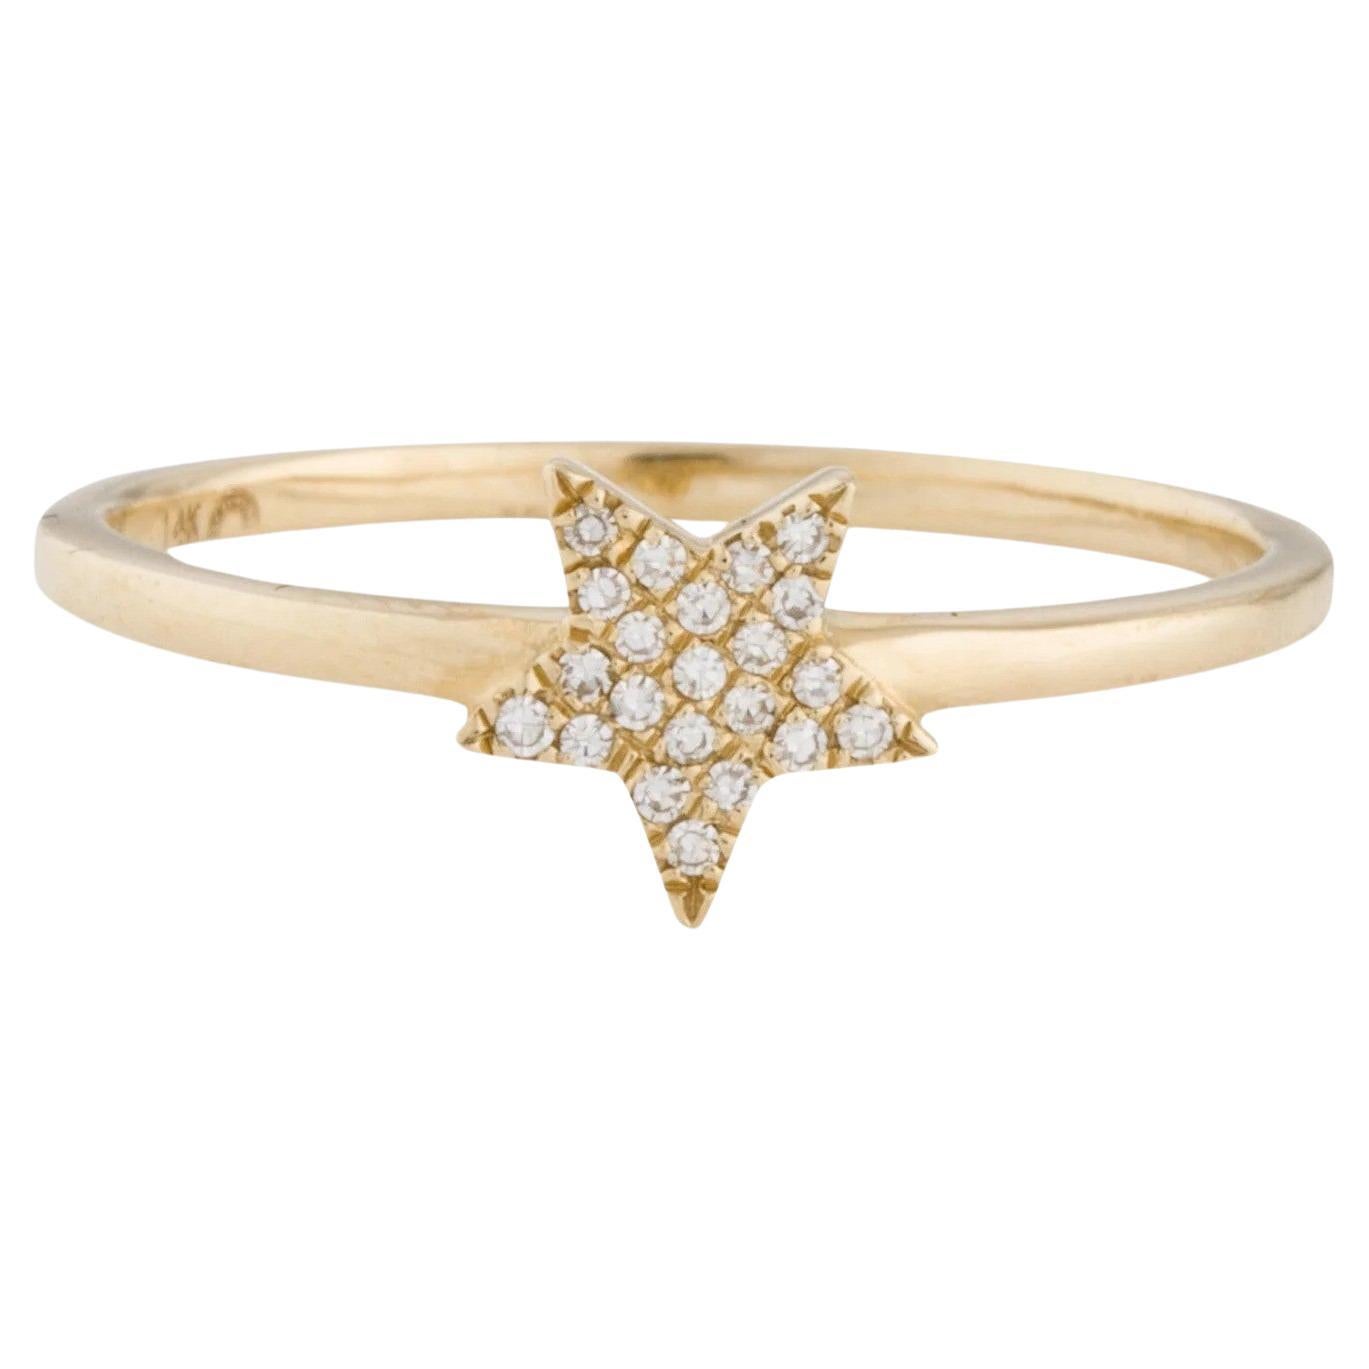 Bague à la mode en or jaune avec étoile de diamants de 0,05 carat